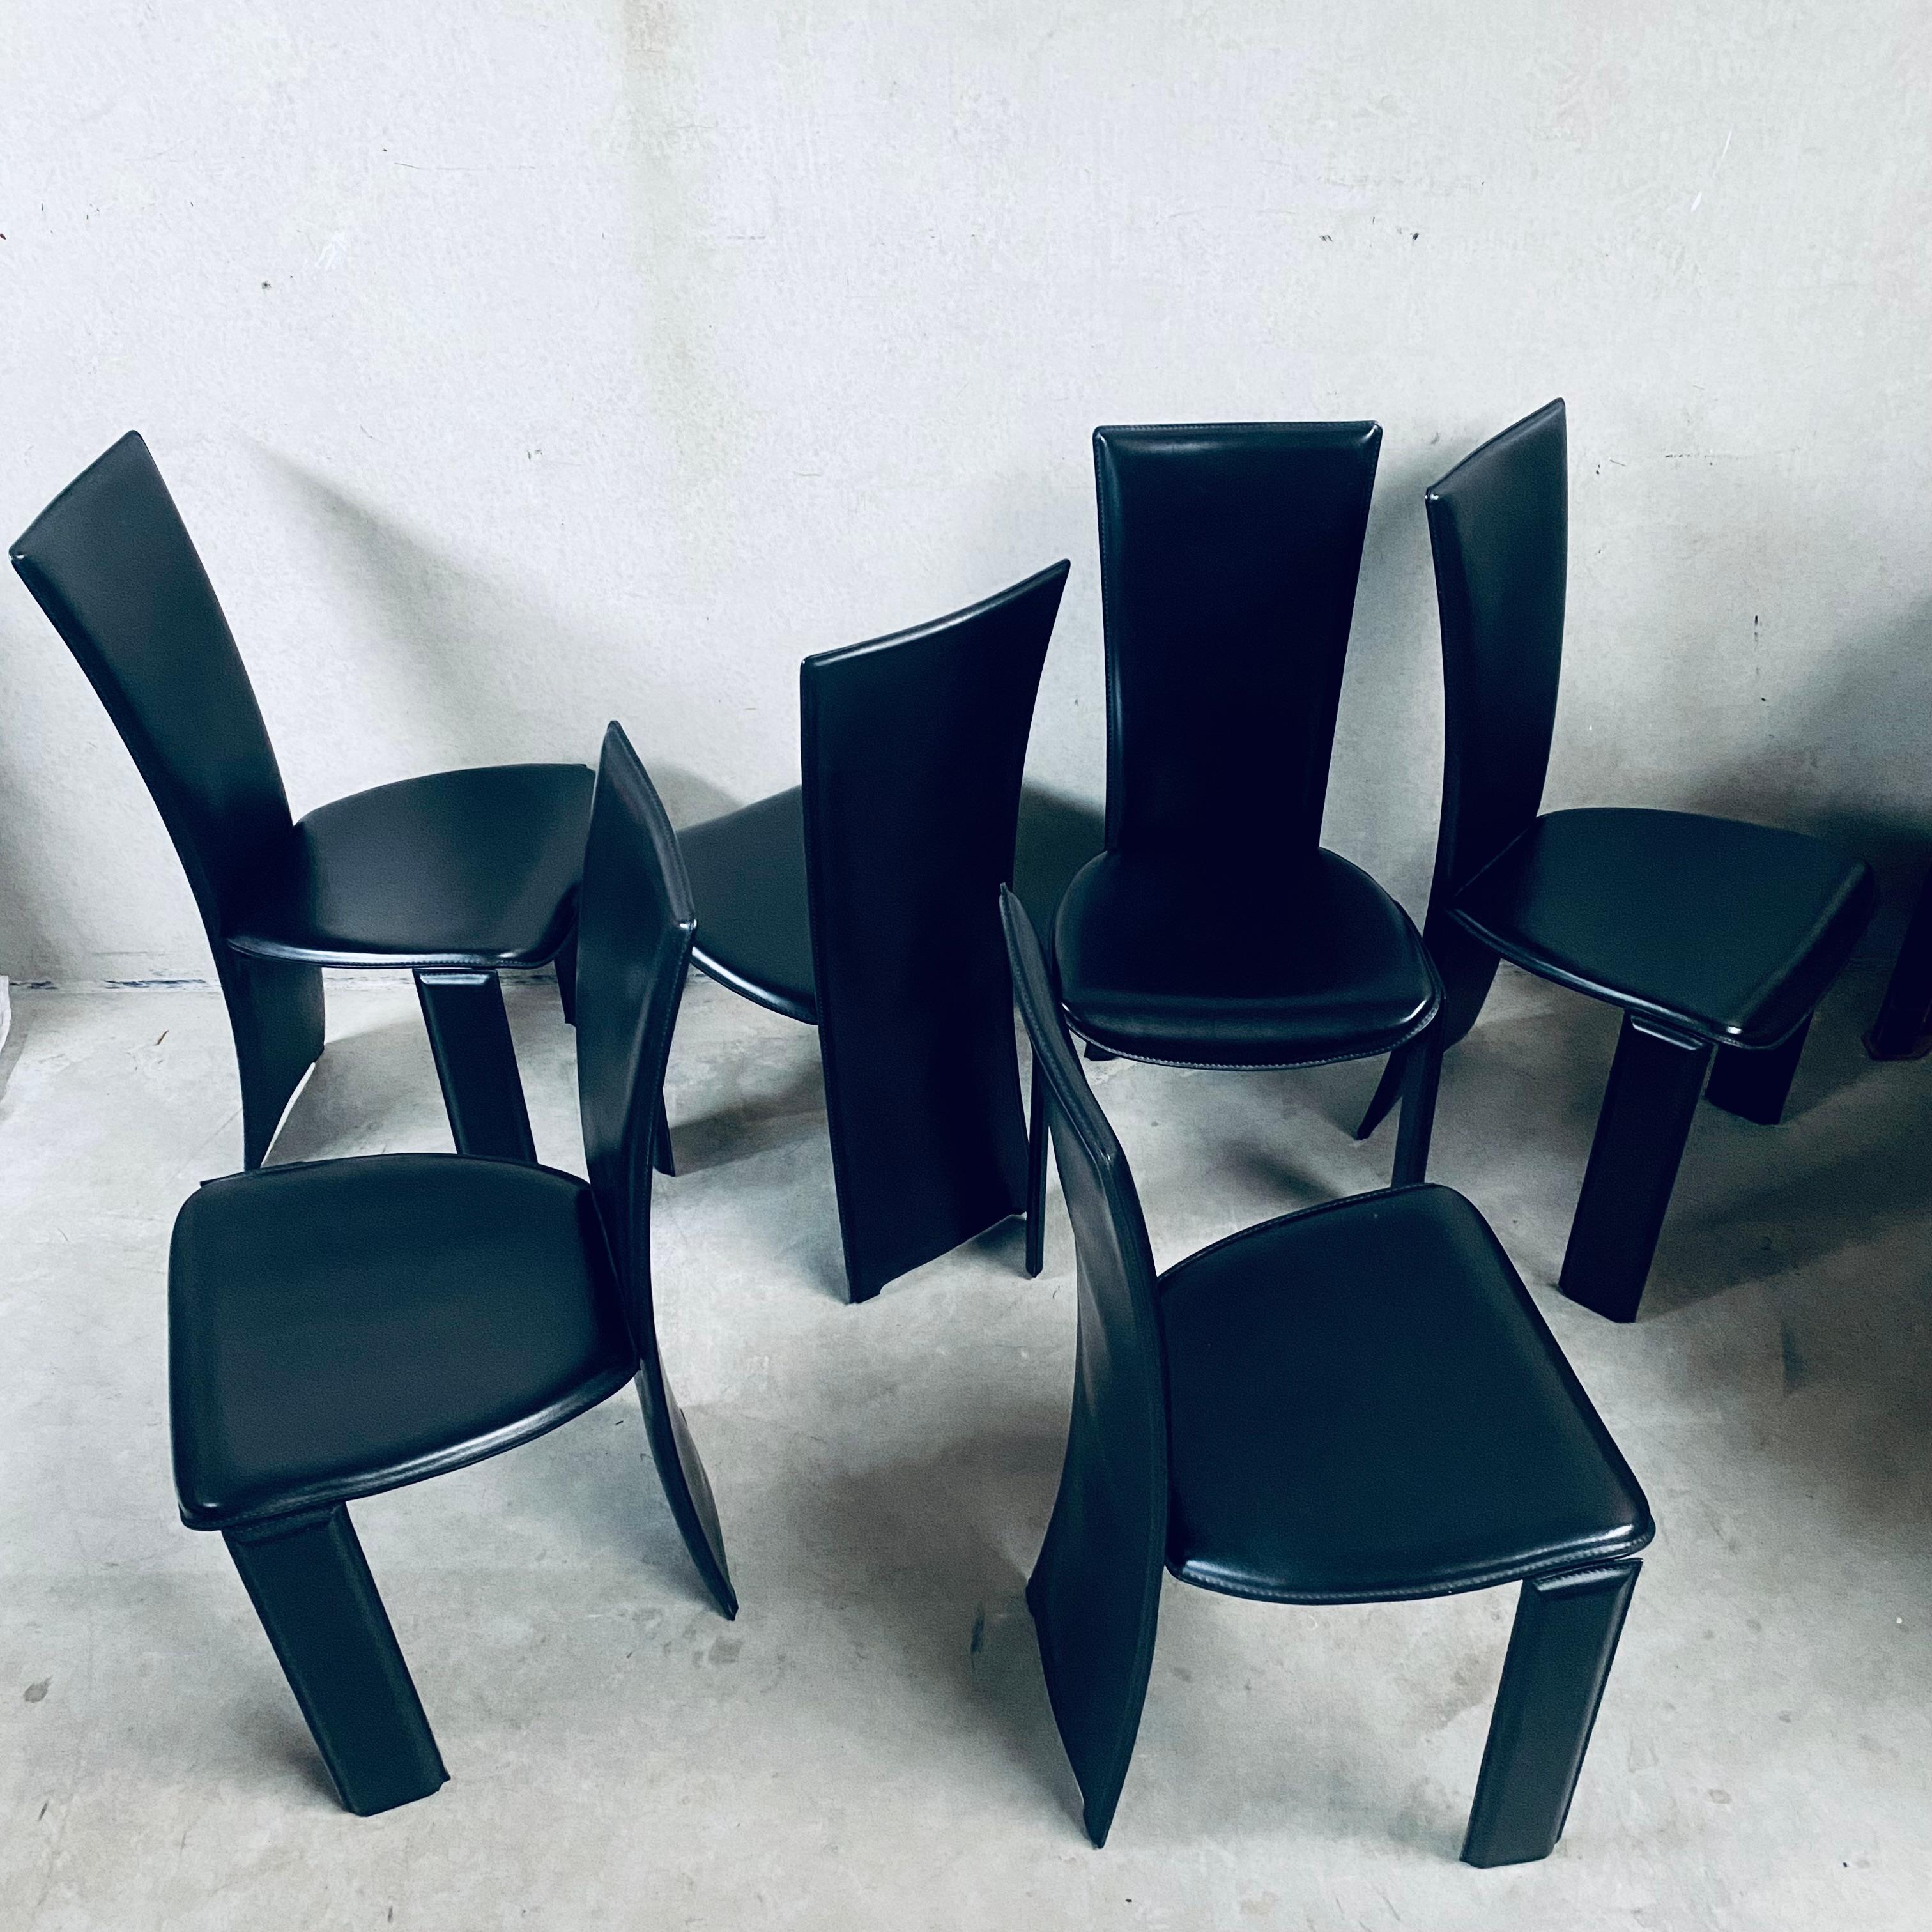 Un classique intemporel : Ensemble de six chaises de salle à manger Tripot en cuir noir par Pietro Costantini, Italie 1980

Élevez votre expérience culinaire avec notre ensemble exquis de six chaises de salle à manger Tripot en cuir noir, conçues